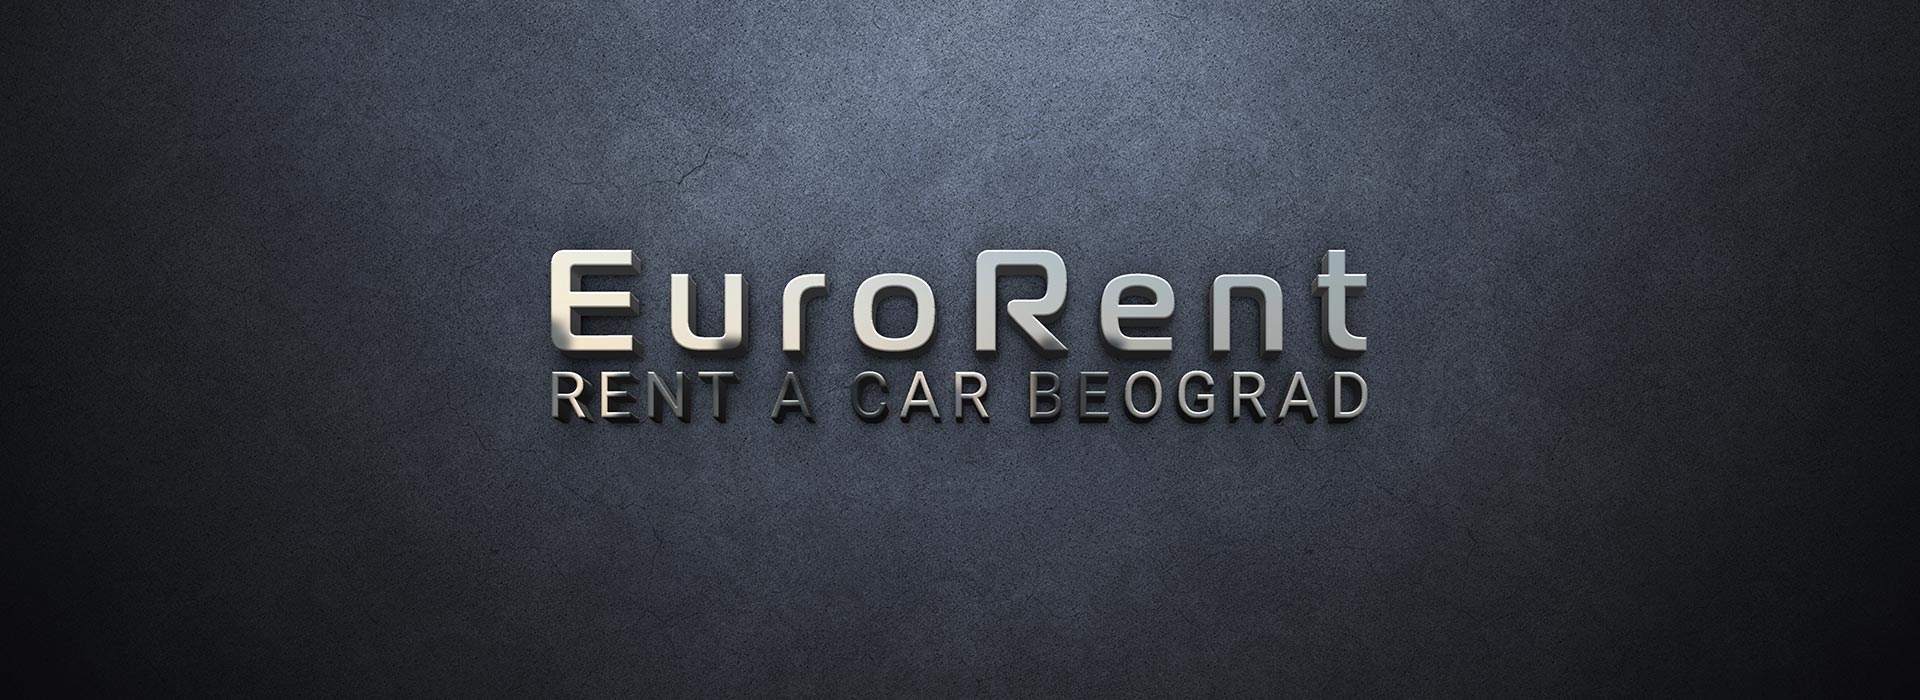 Rent a car Beograd | O nama